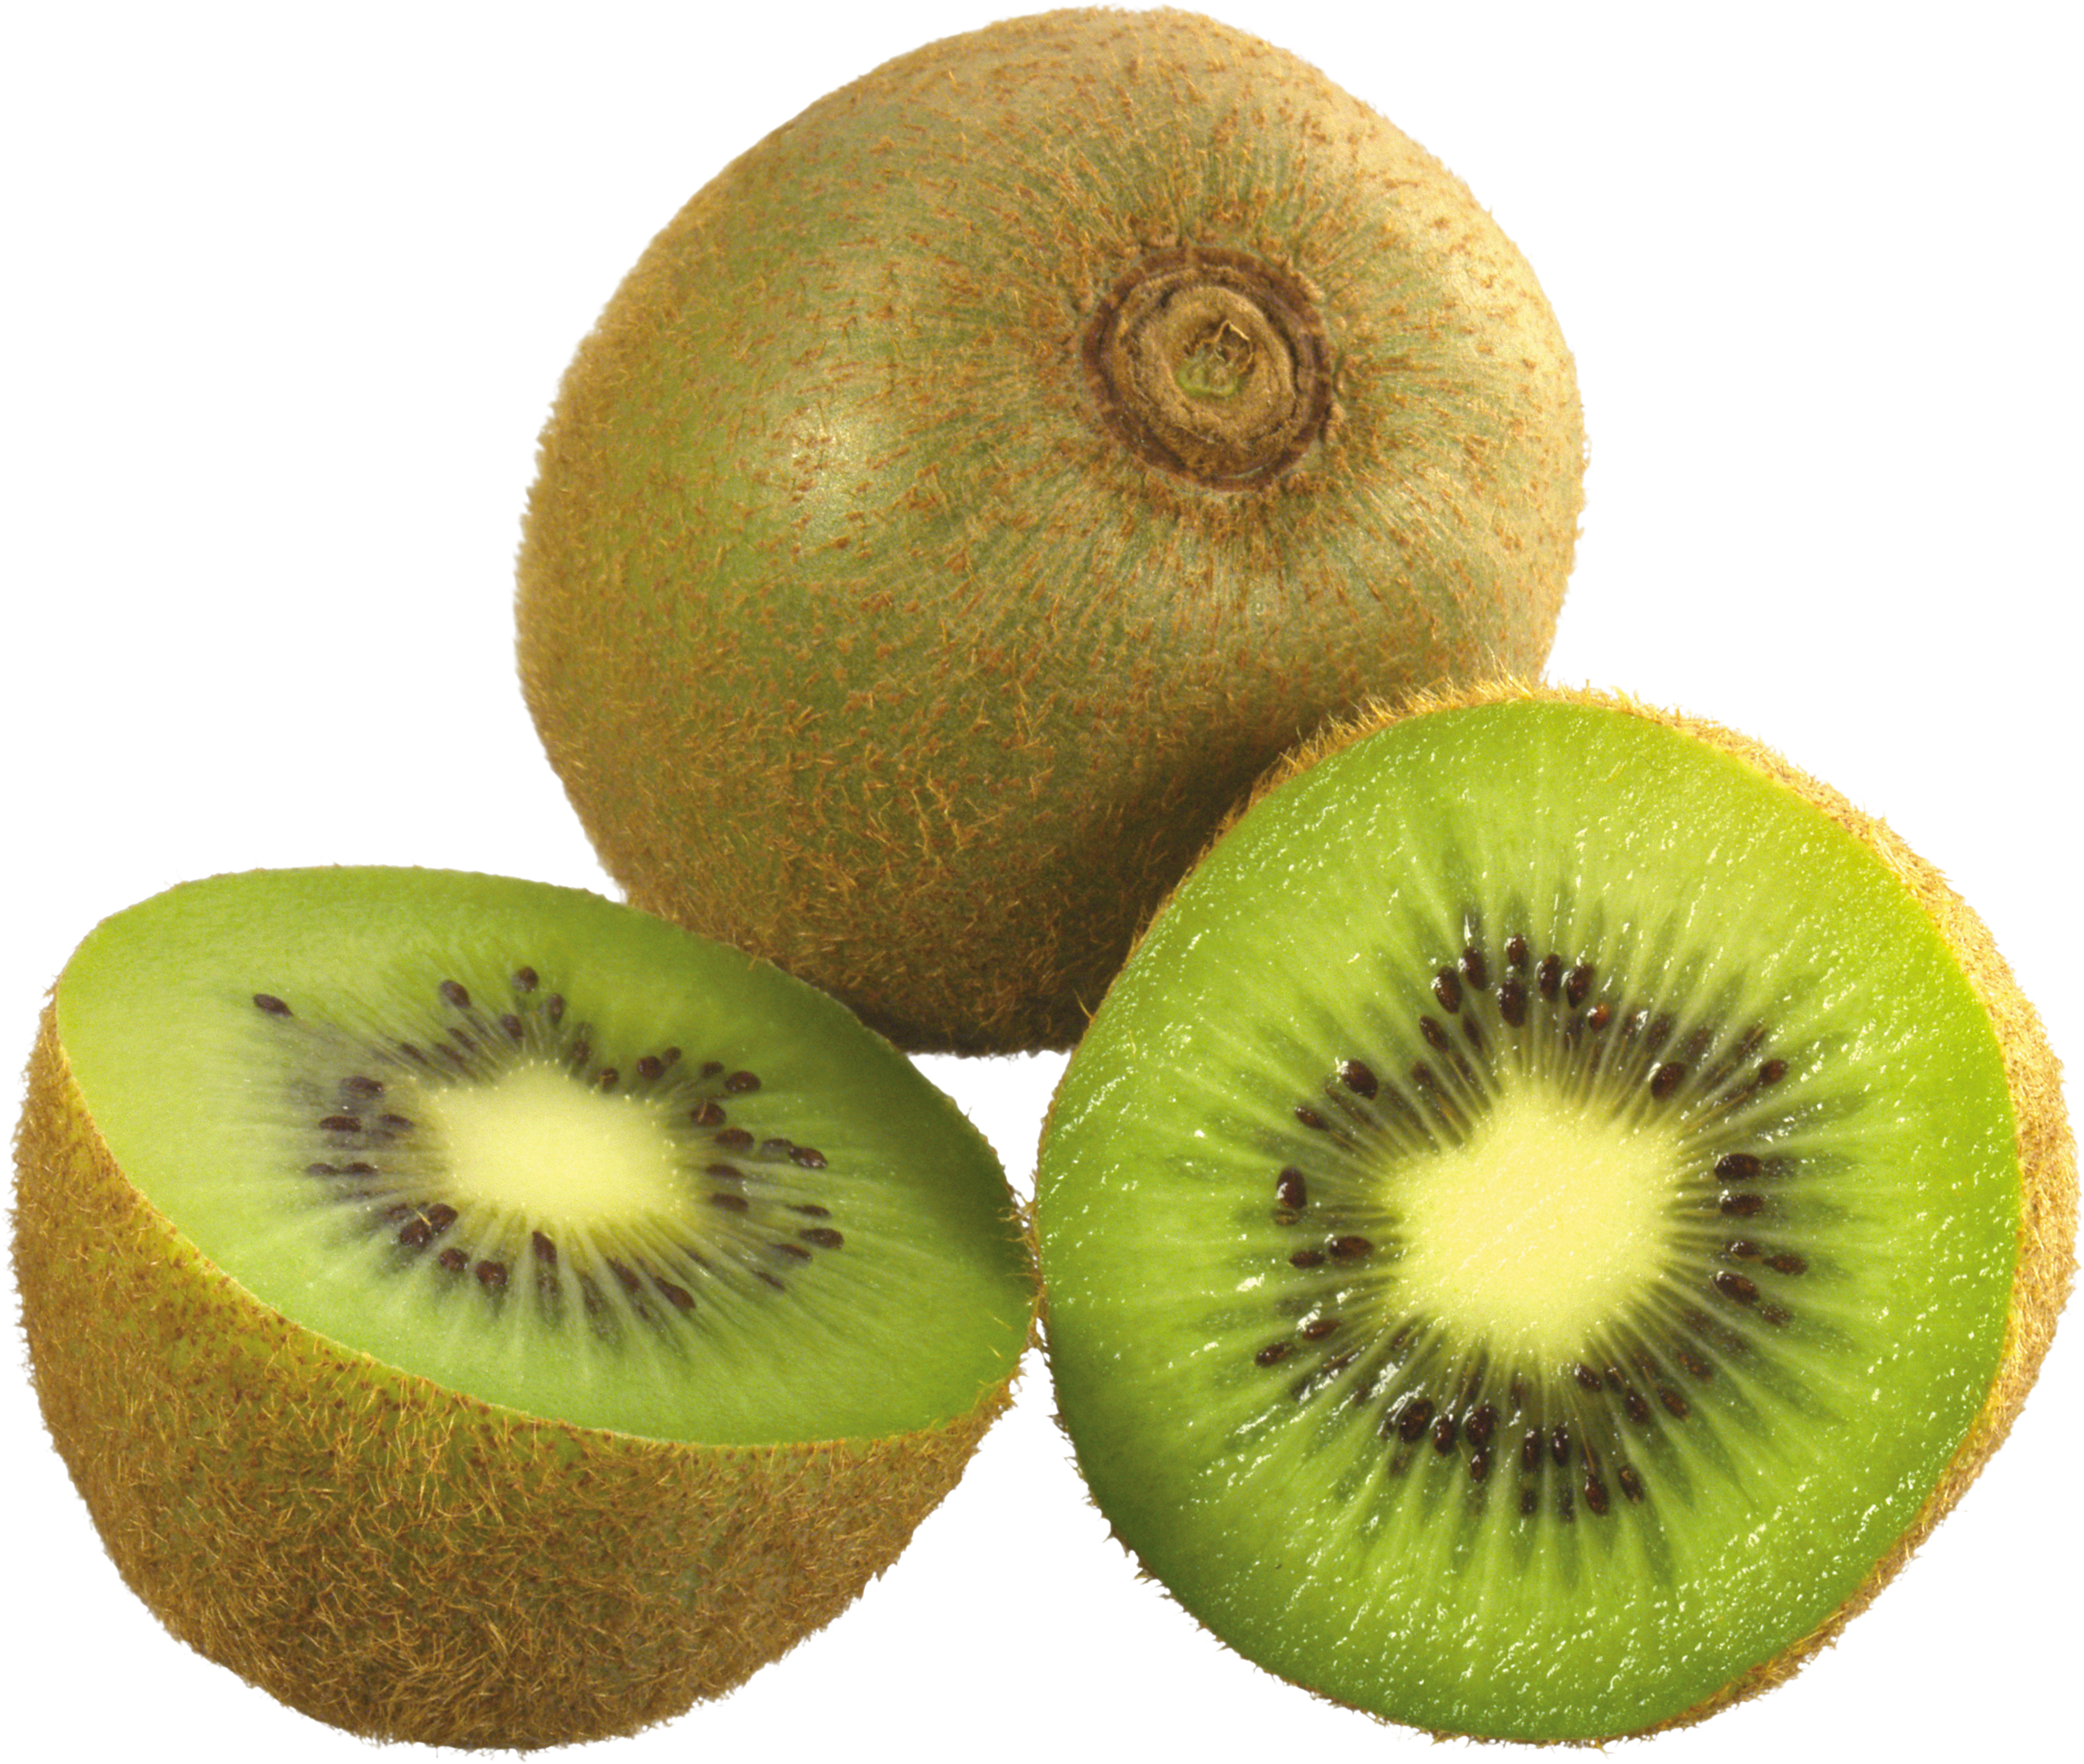 Kiwi Png Image, Free Fruit Kiwi Png Pictures Download - Kiwi Png (2443x2068), Png Download